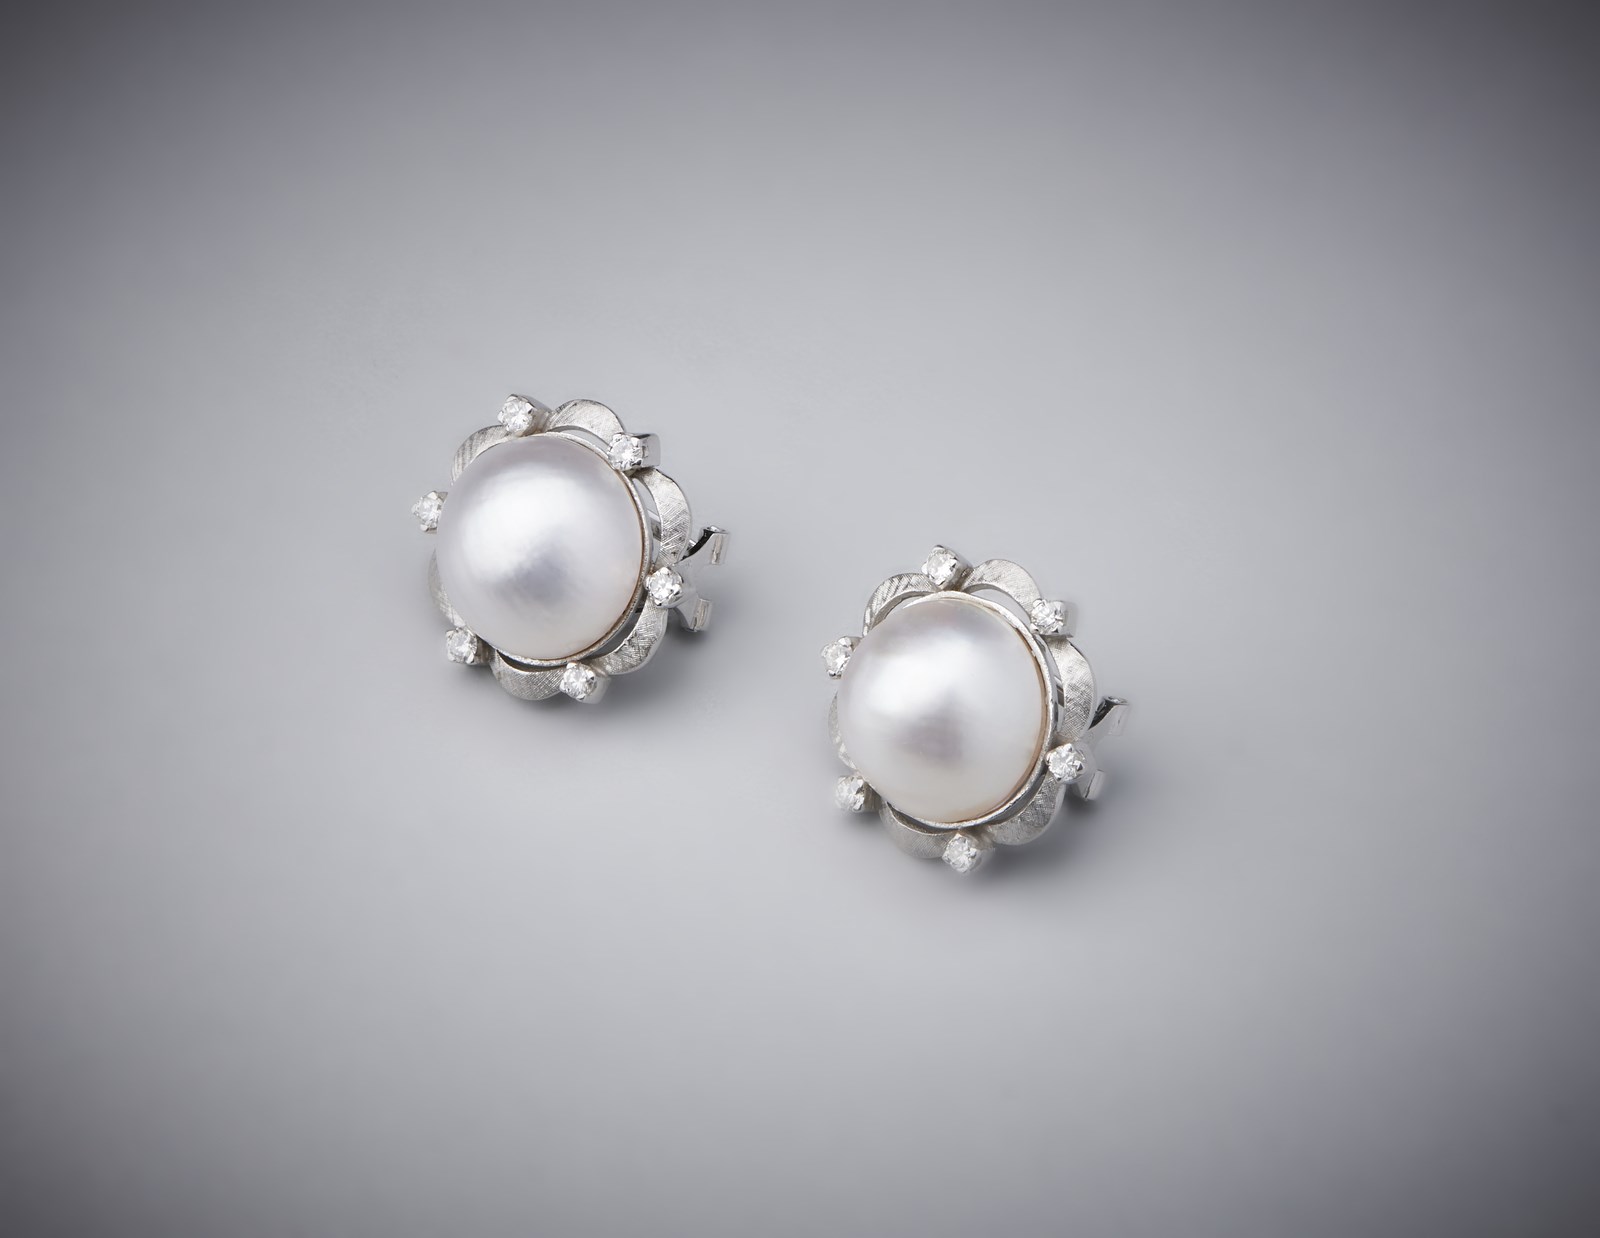 Orecchini artigianali in oro bianco 750/1000 con perle mabè e diamanti bianchi.  (. )